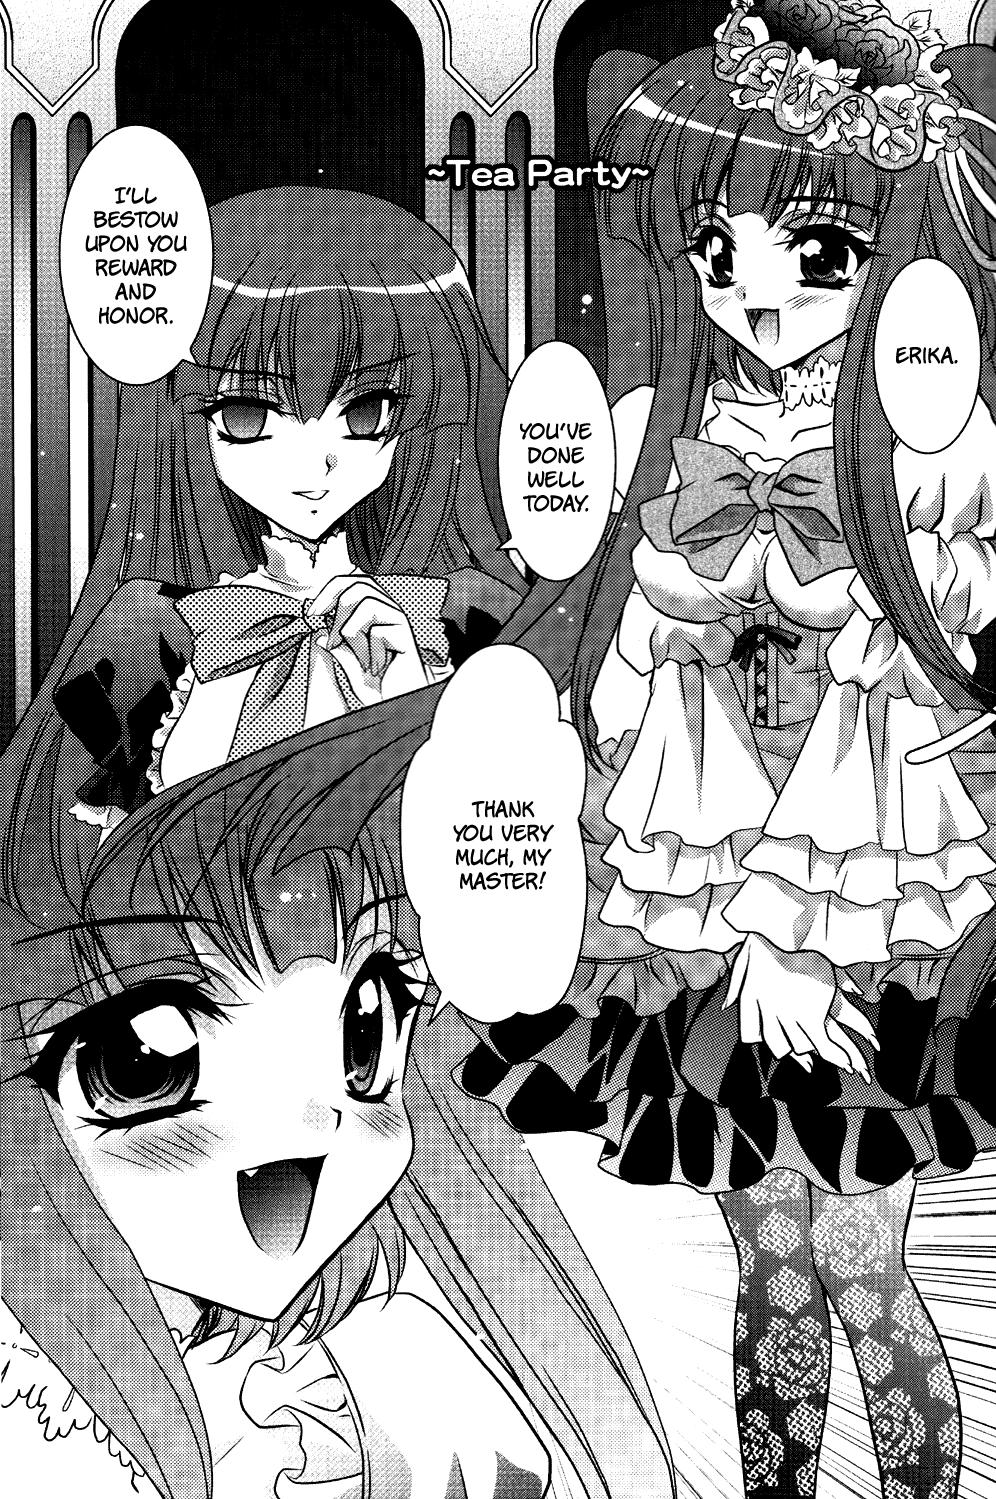 Ecchi Milk Tea Party - Umineko no naku koro ni Gay Cut - Page 3